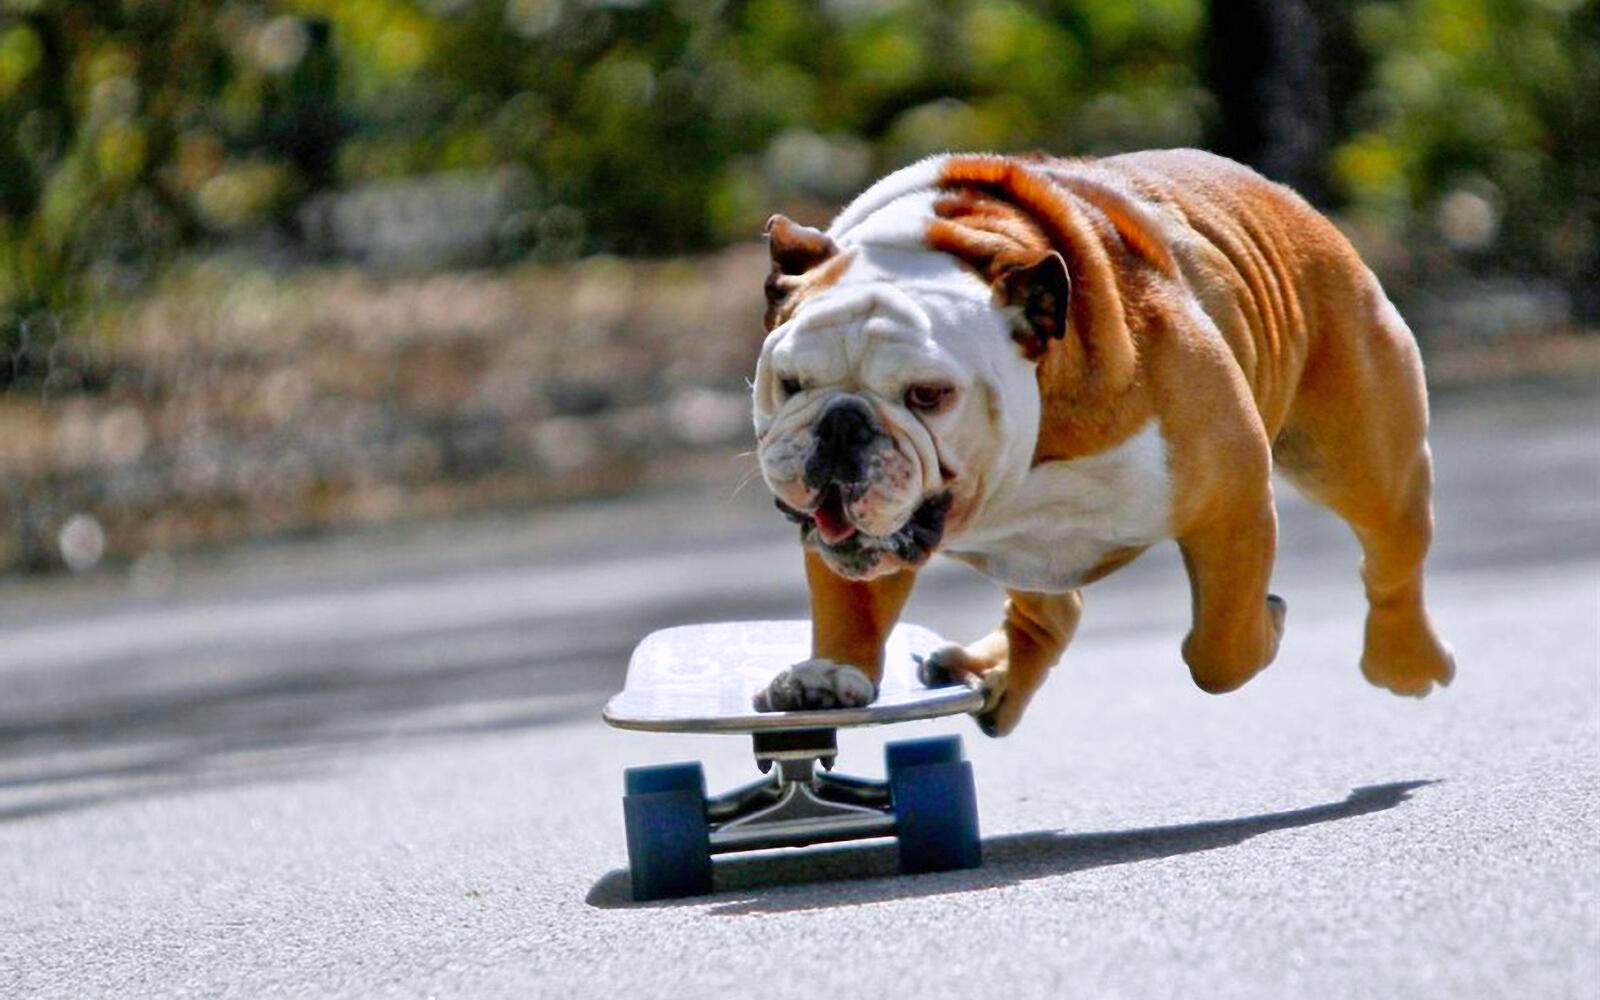 Wallpapers dog bulldog skate on the desktop